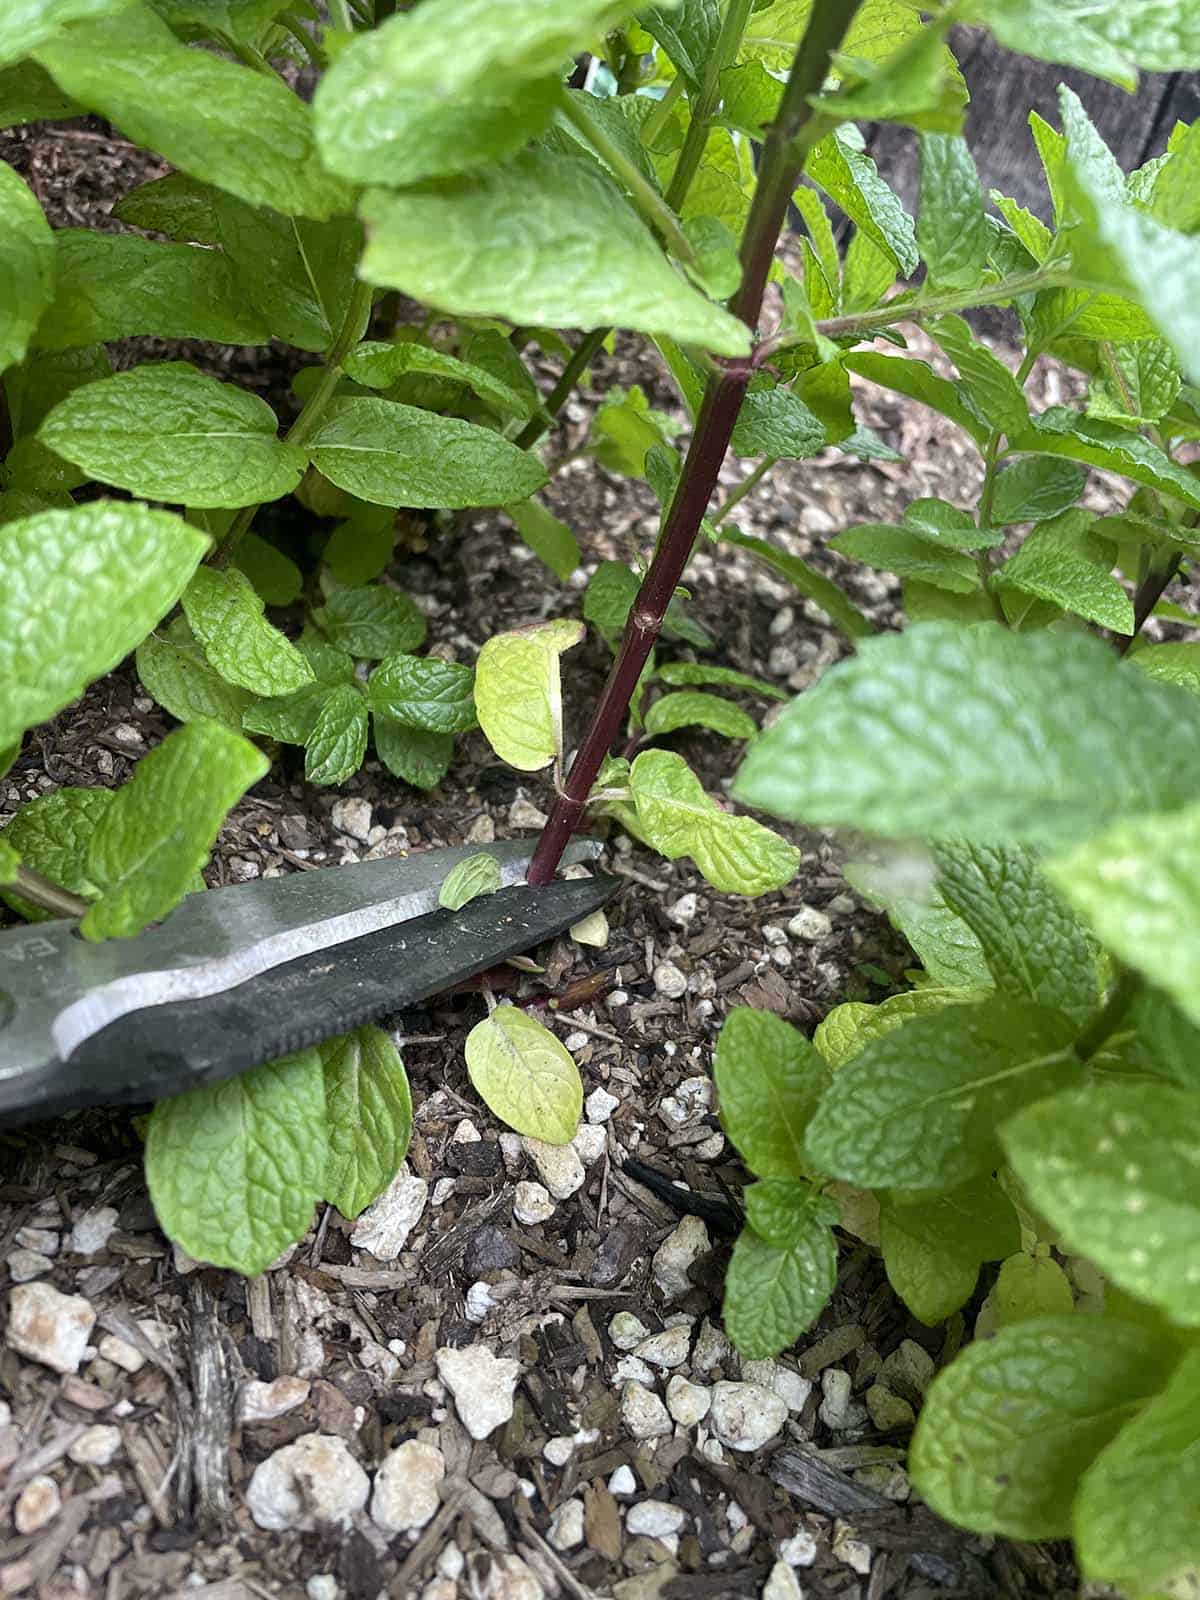 Garden sheers cutting off a mint stalk.